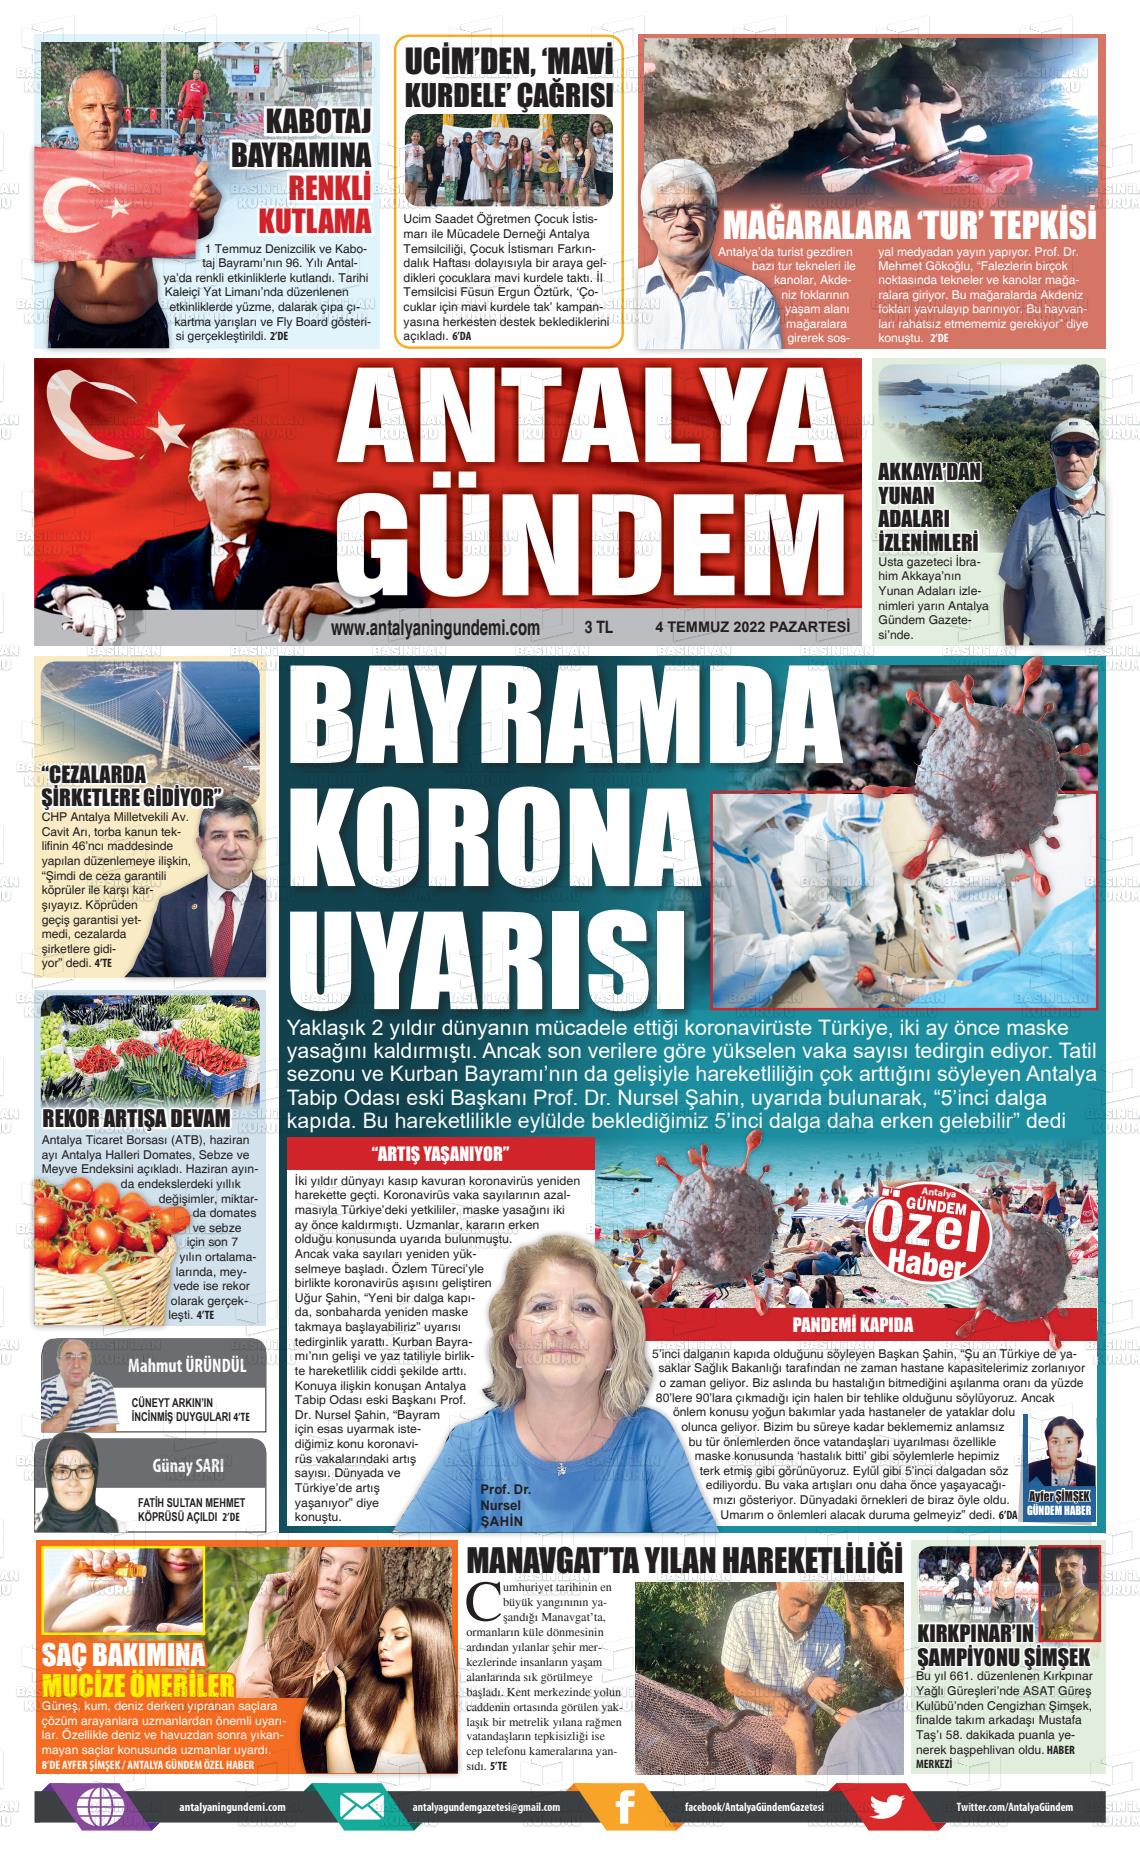 04 Temmuz 2022 Antalya'nın Gündemi Gazete Manşeti